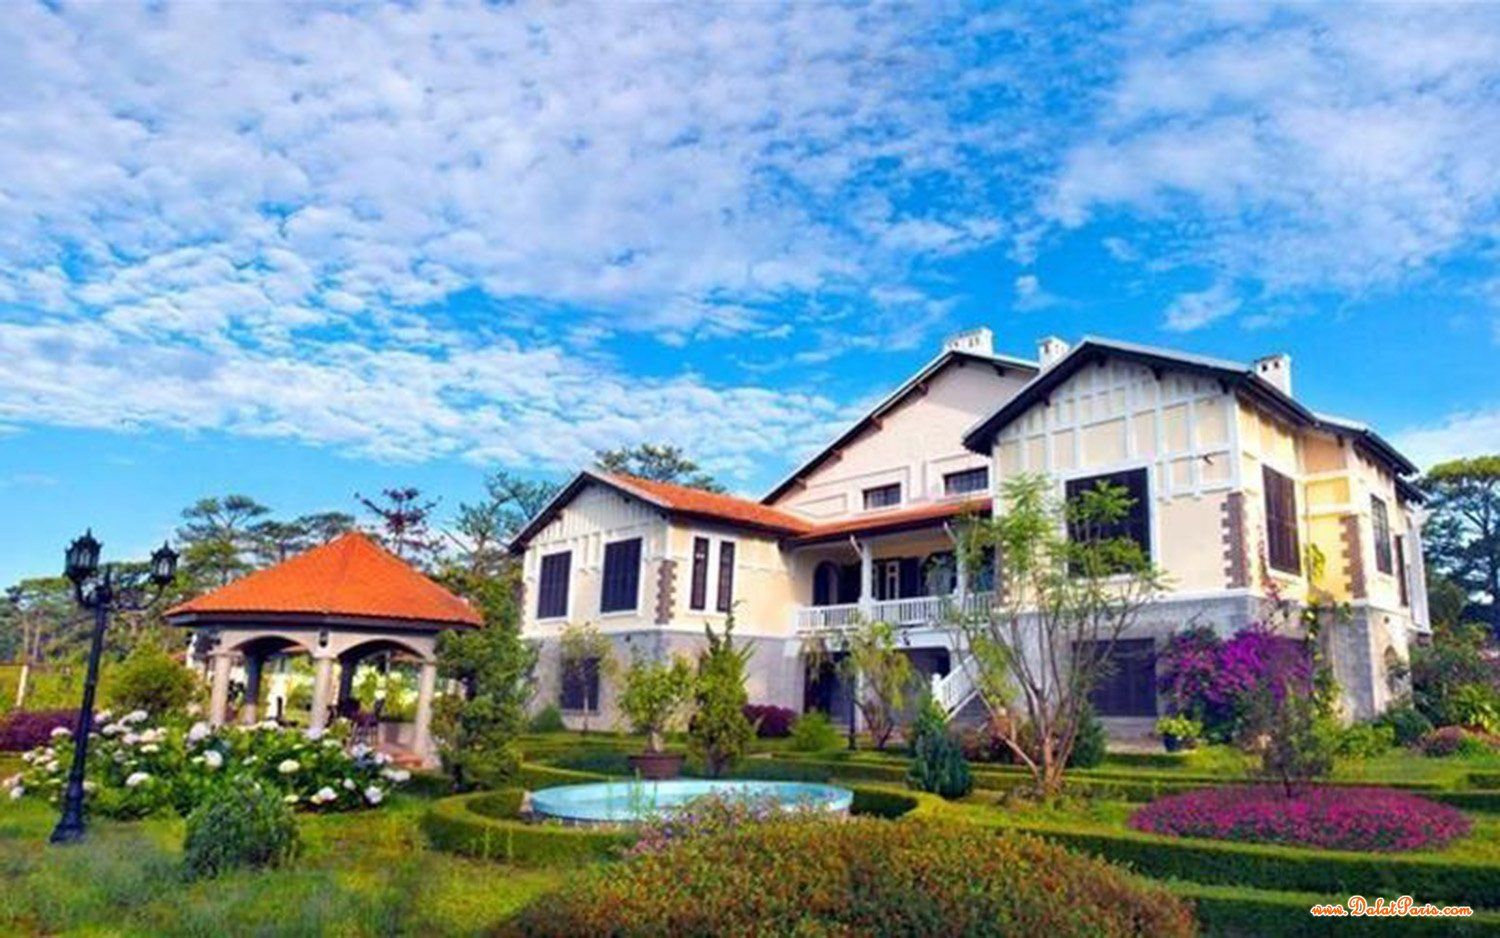 Nhà phố đường Trần Phú, Phường 3, Ngay trung tâm TP. Đà Lạt, thích hợp kinh doanh khách sạn, nhà hàng,... giá tốt 18 tỷ.